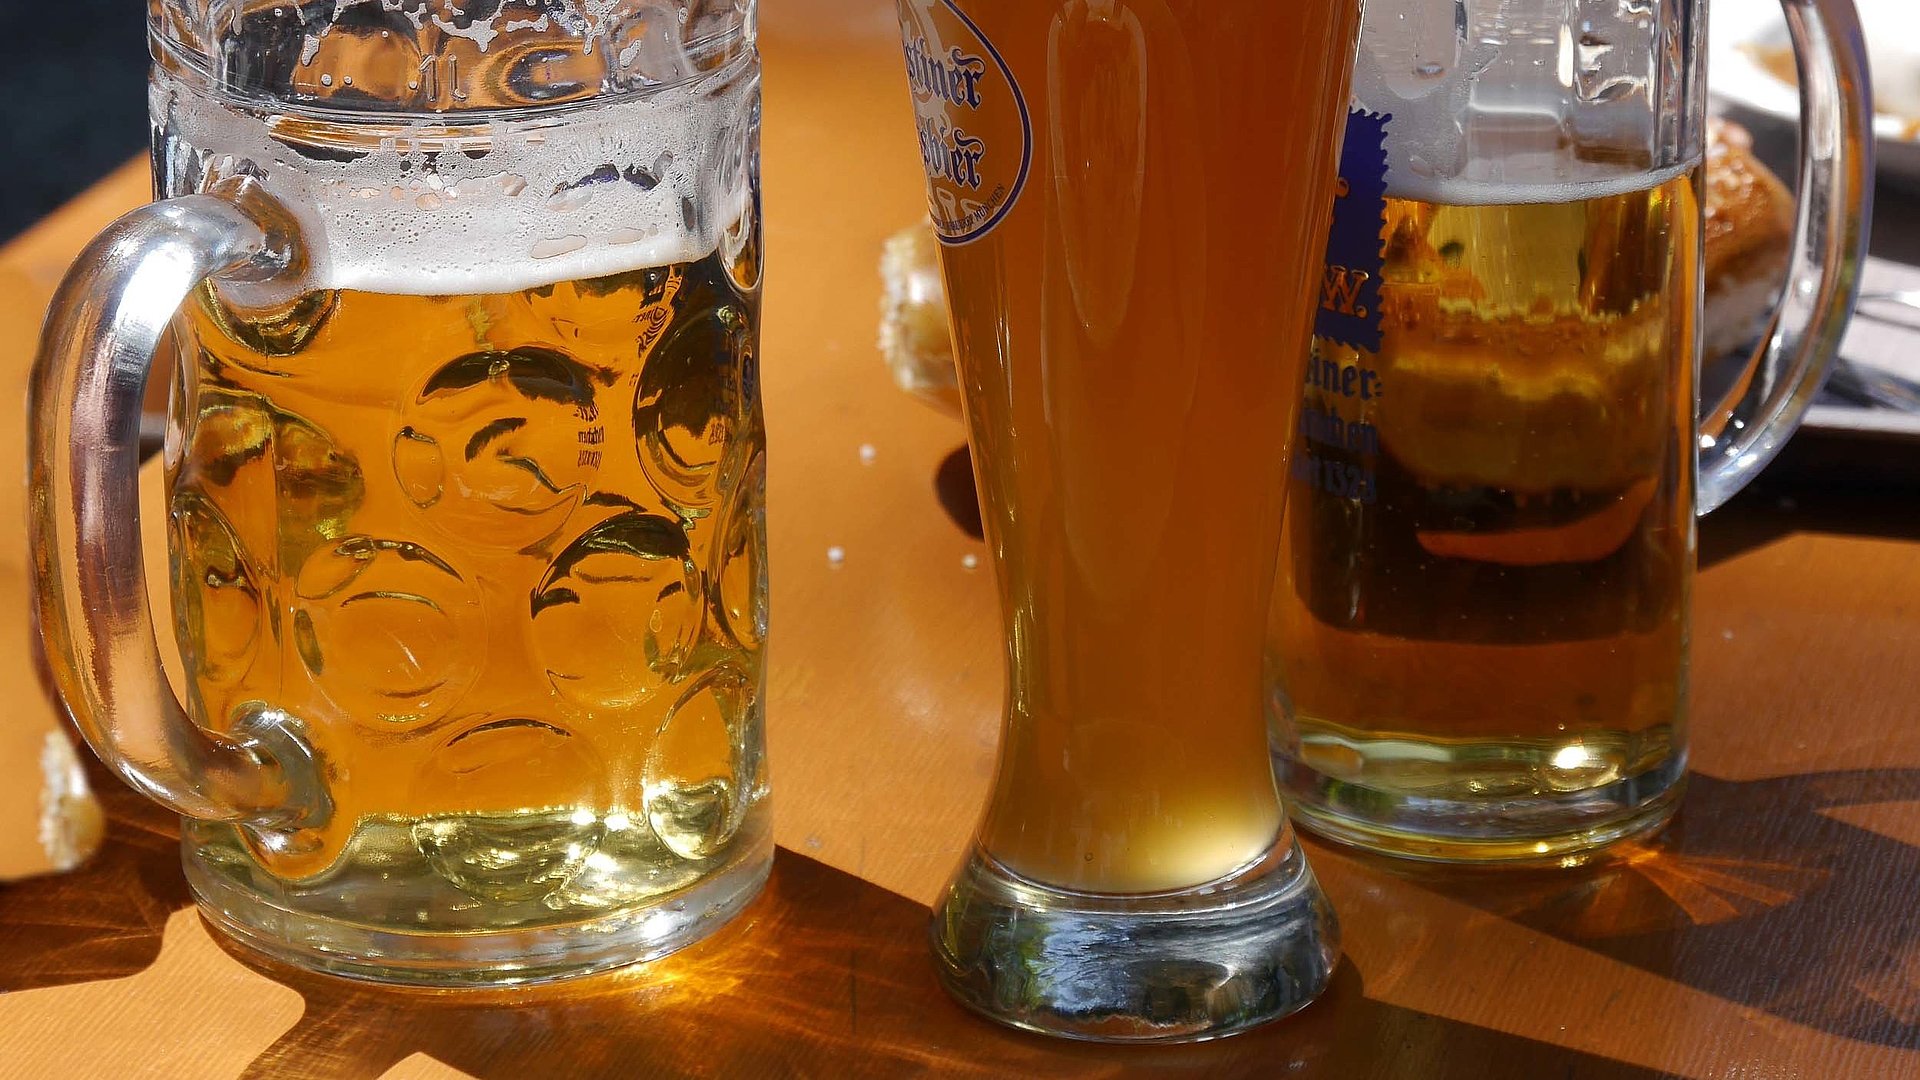 Biergärten im Ostallgäu - Biergärten im Oberallgäu - Kamera blickt auf frisches Bier mit schöner Krone oben drauf